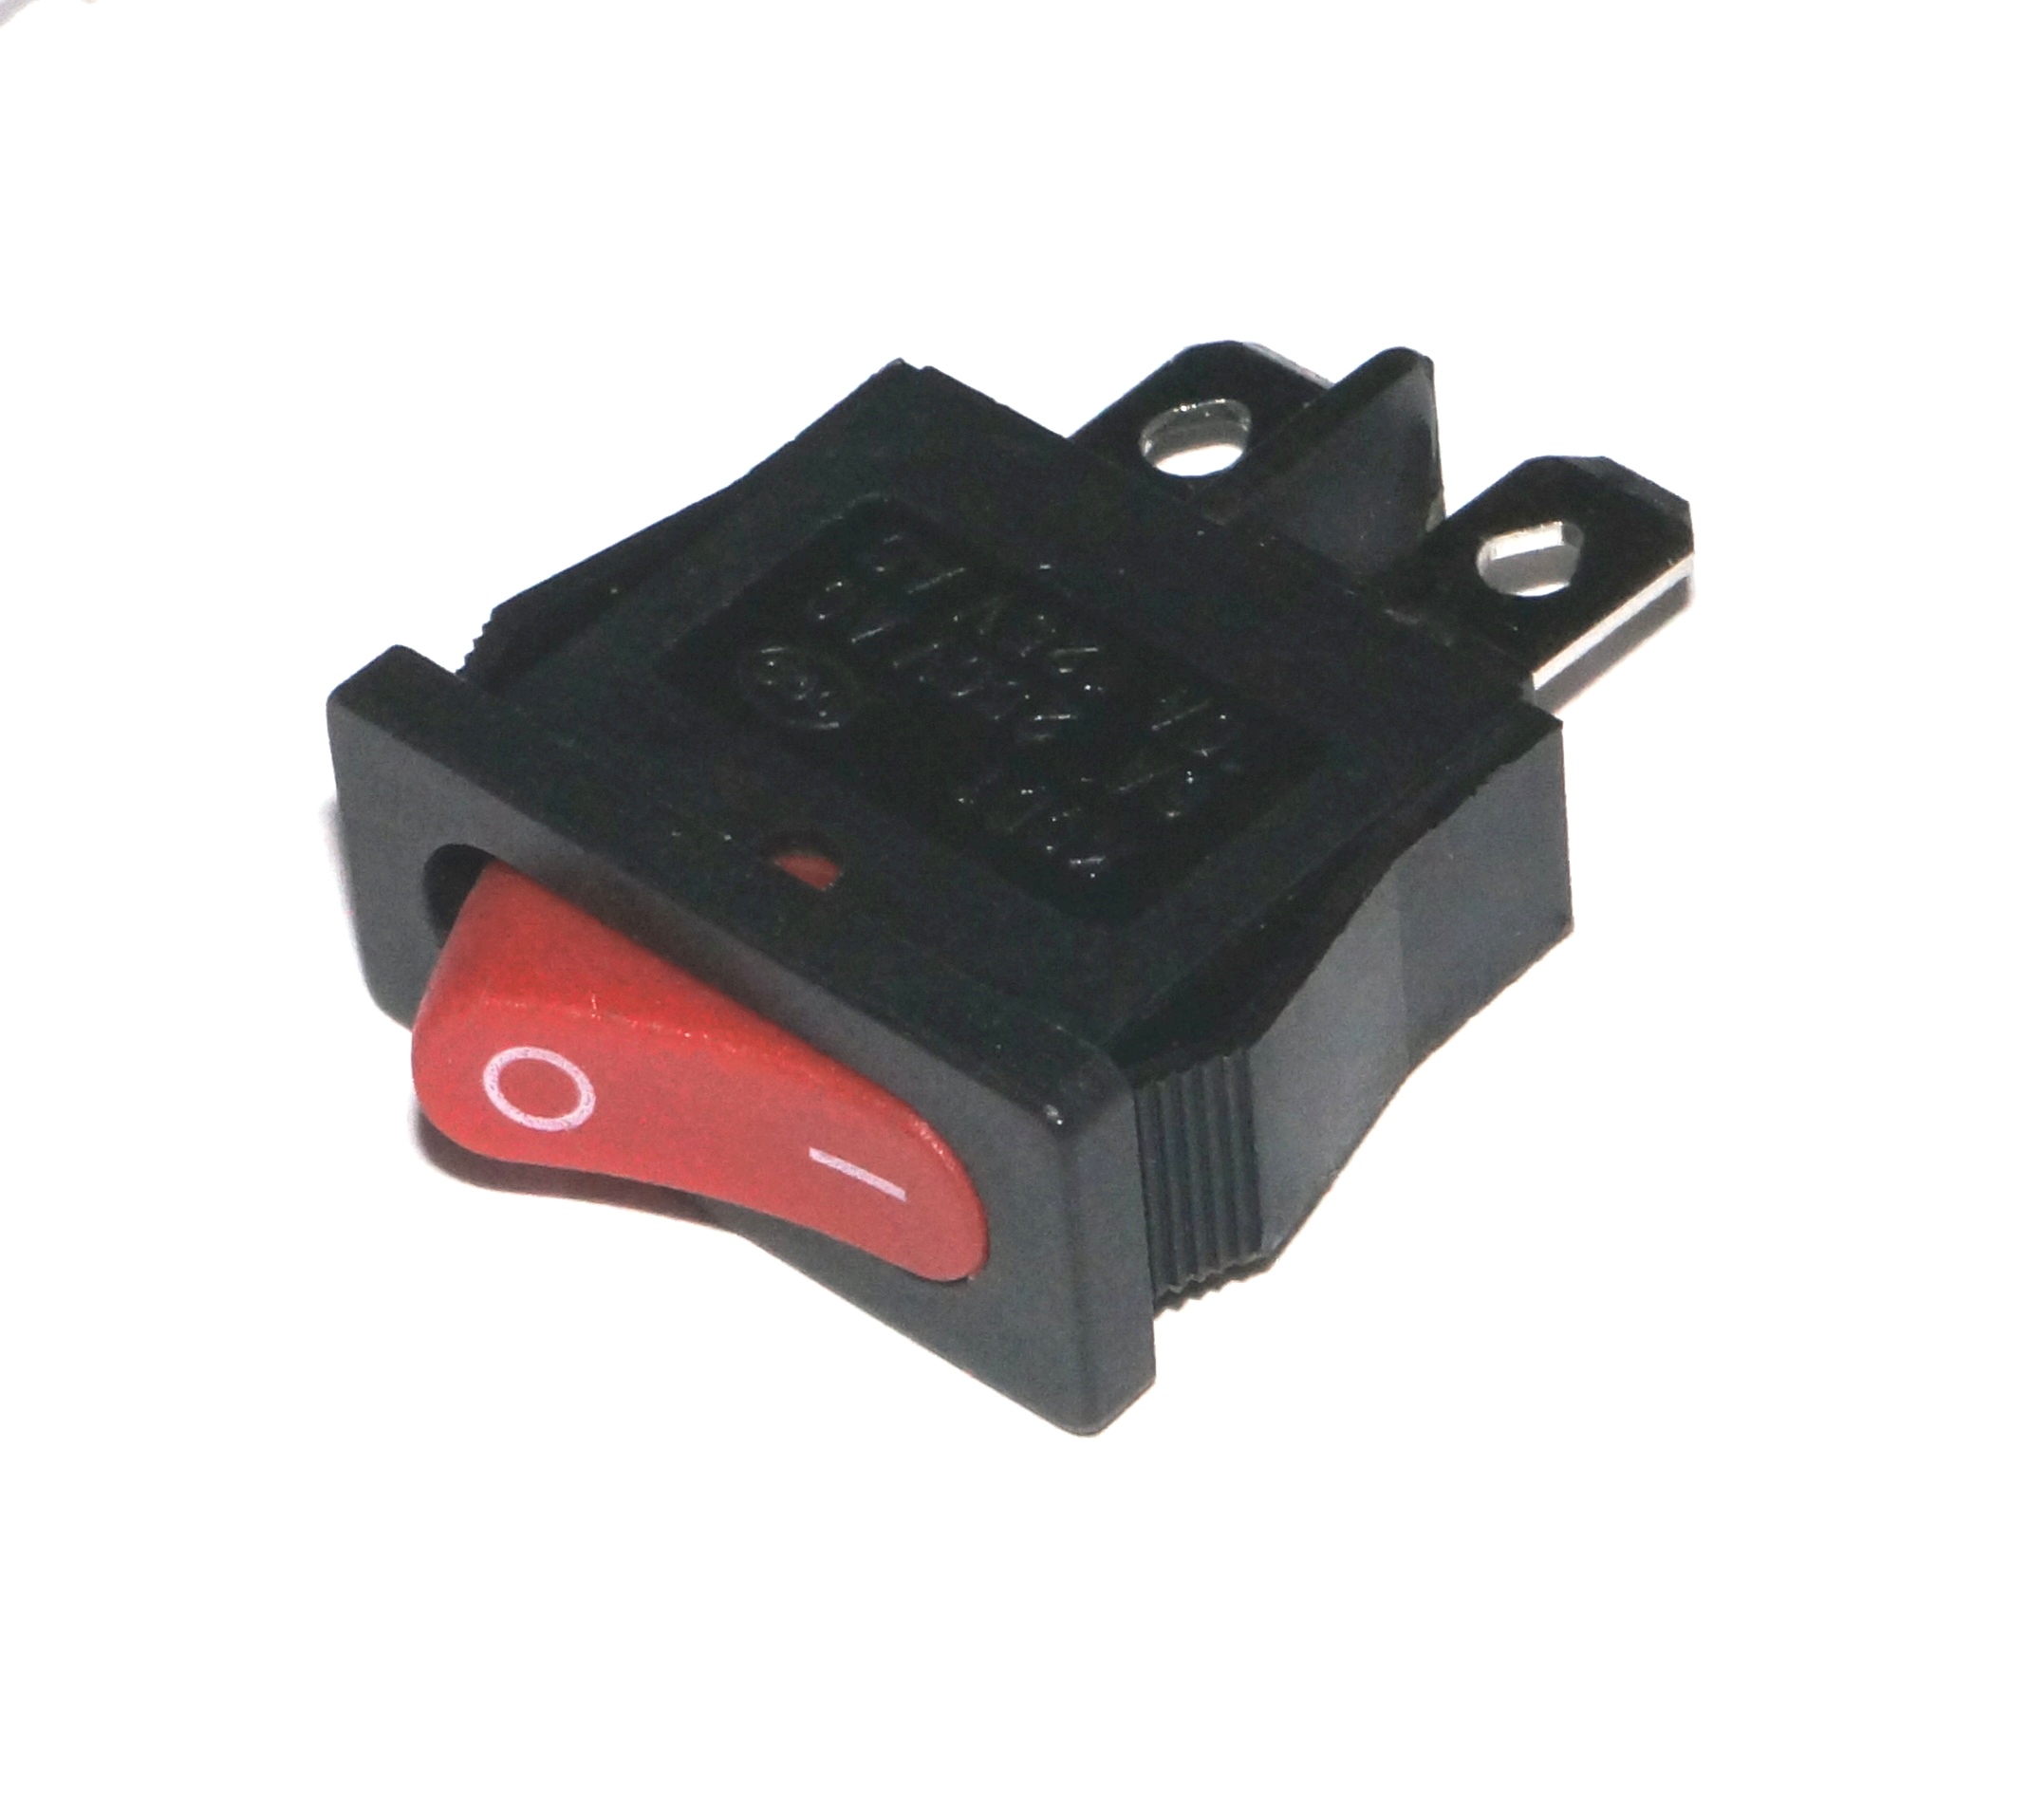 Купить сетевой выключатель. Щелчковый выключатель для сетевого фильтра. Klo63 выключатель Lamp 250 для сетевого фильтра. Переключатель на сетевом фильтре St-001 KL. Термовыключатель для сетевого фильтра.